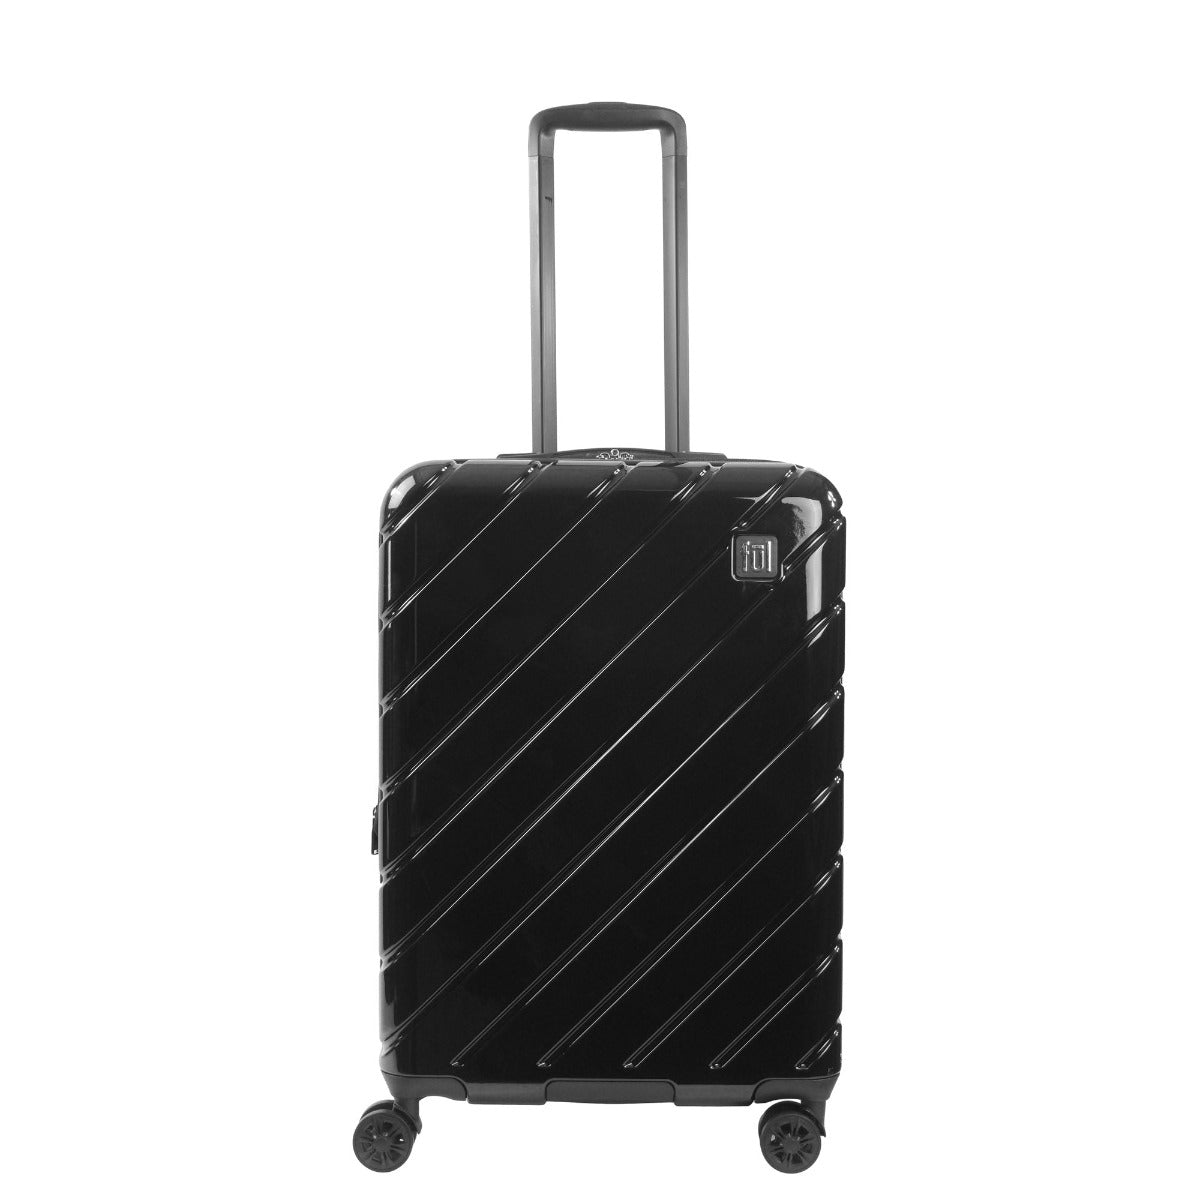 Velocity 27" hardside spinner suitcase black checked luggage